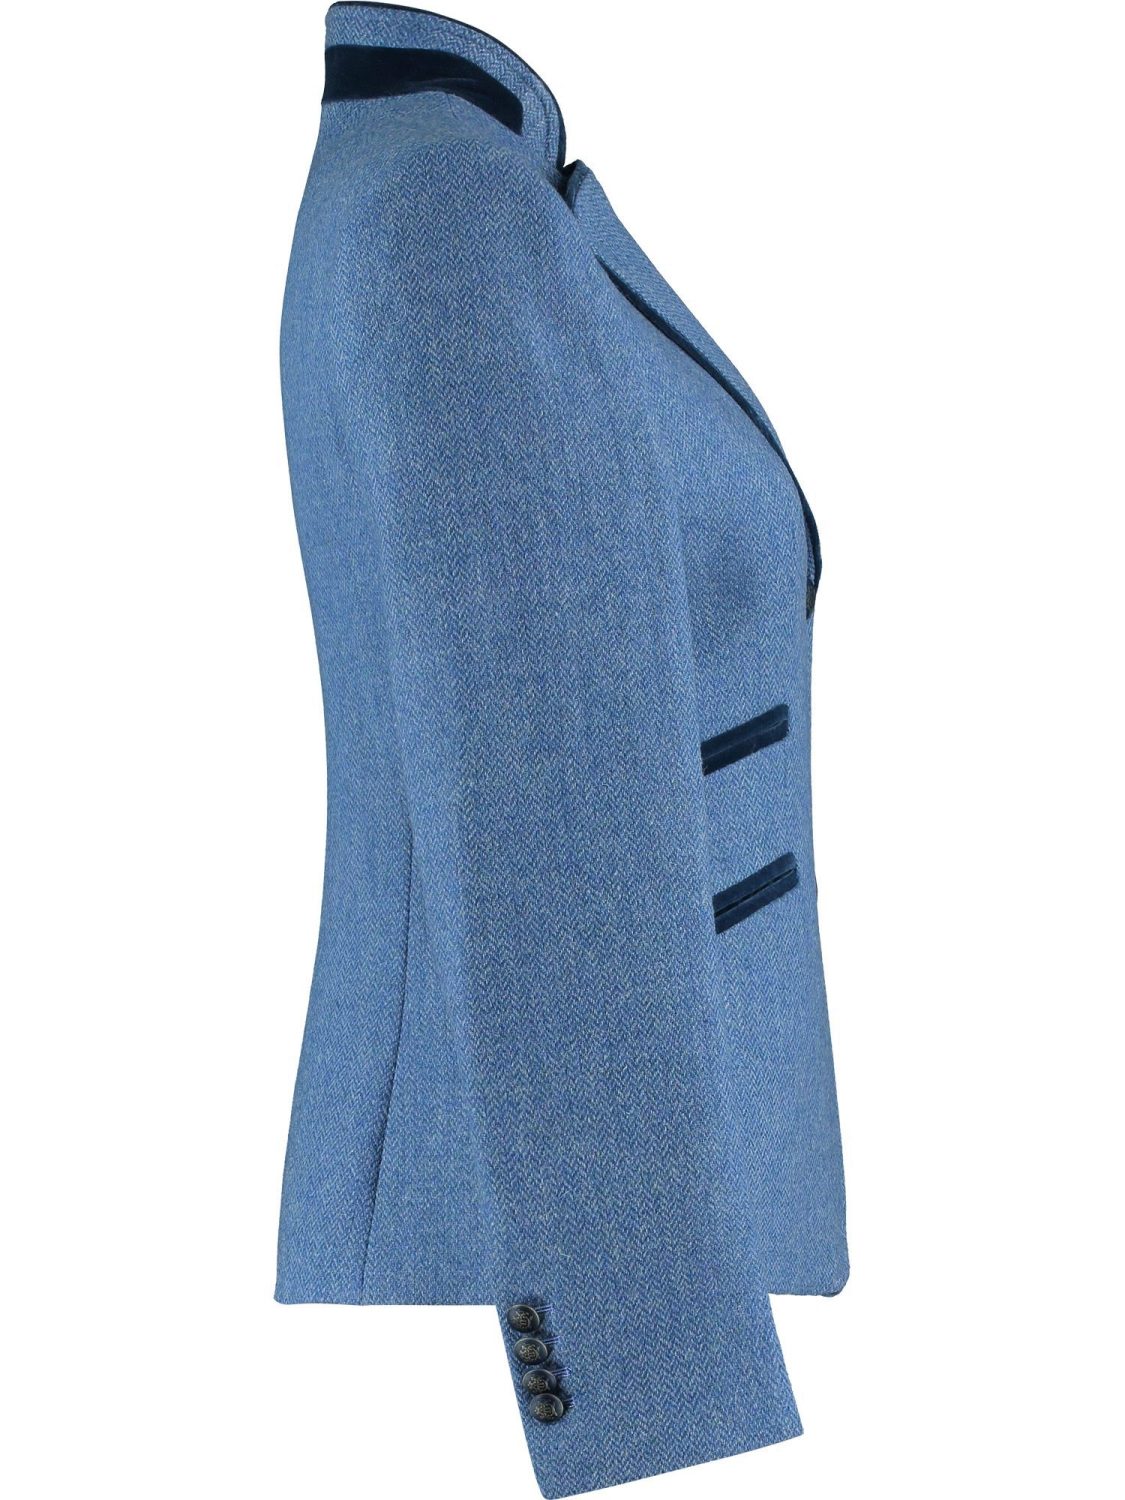 Amora Blue Tweed Jacket ms